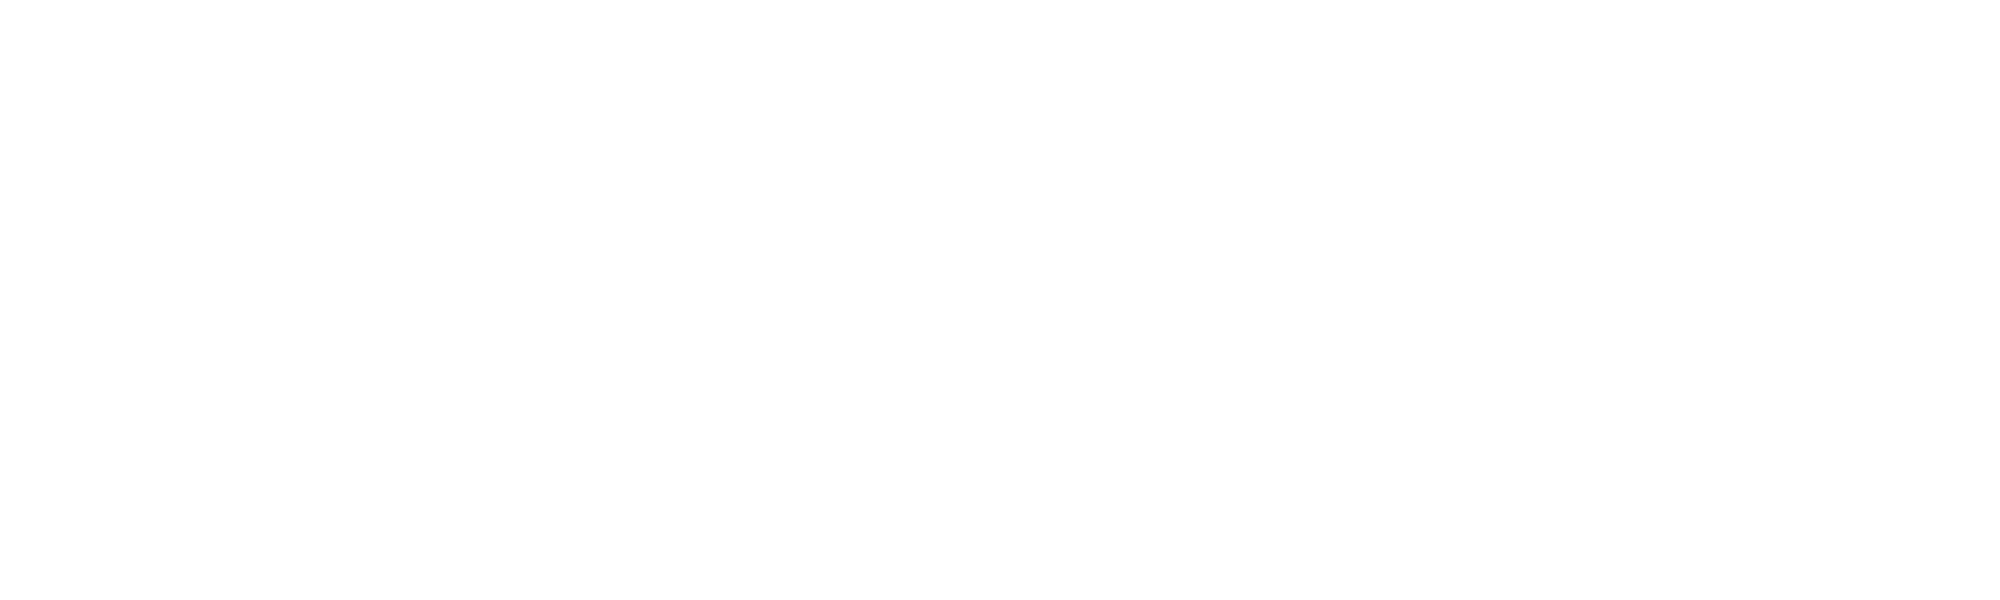 smearballs logo